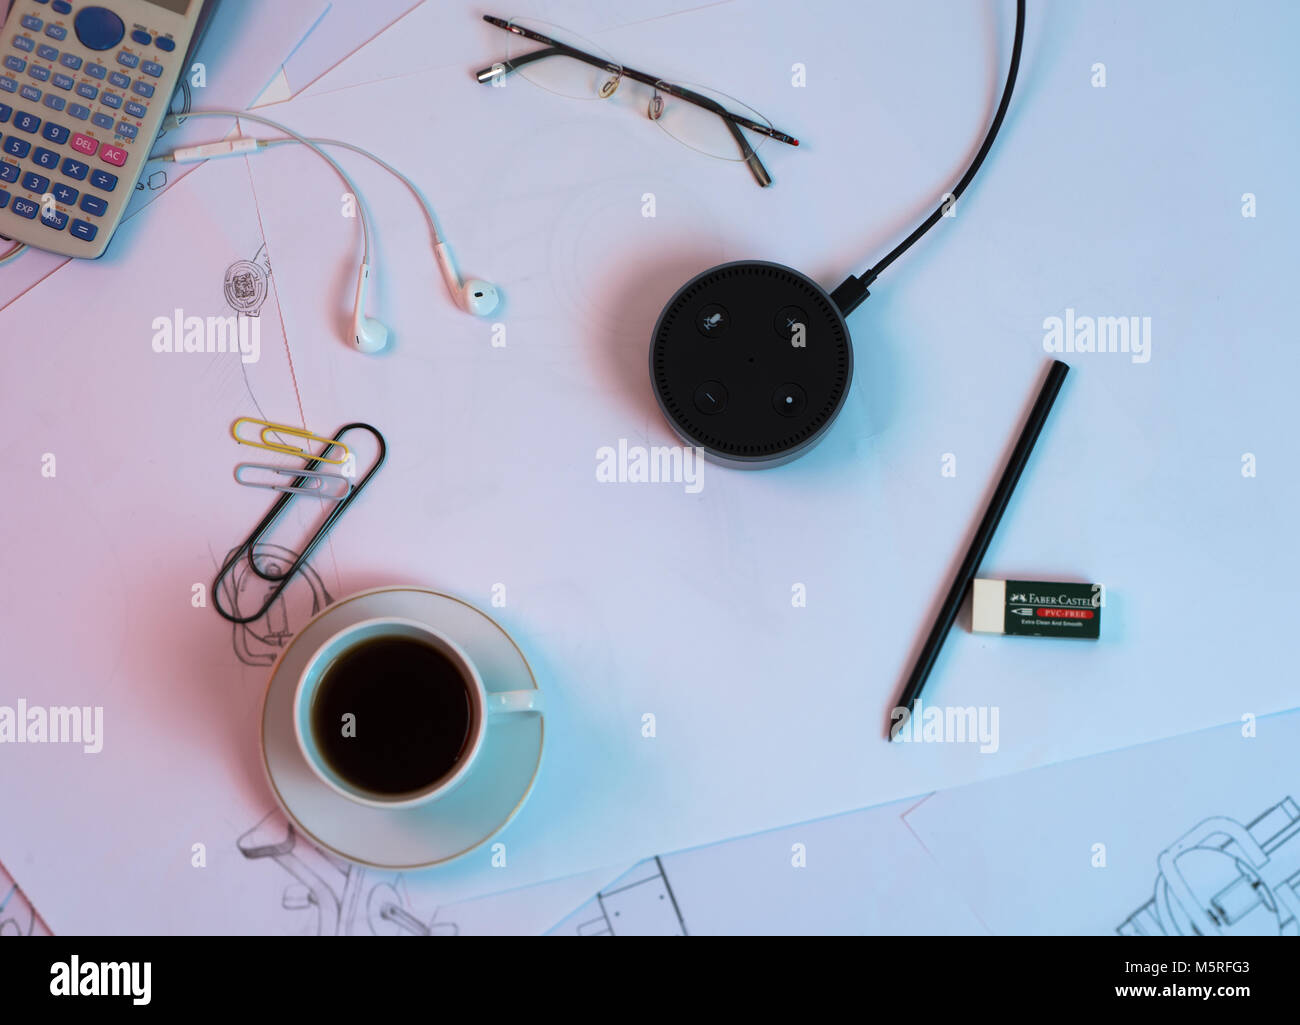 Büro Schreibtisch und Amazon Alexa künstliche Intelligenz Gerät  Stockfotografie - Alamy